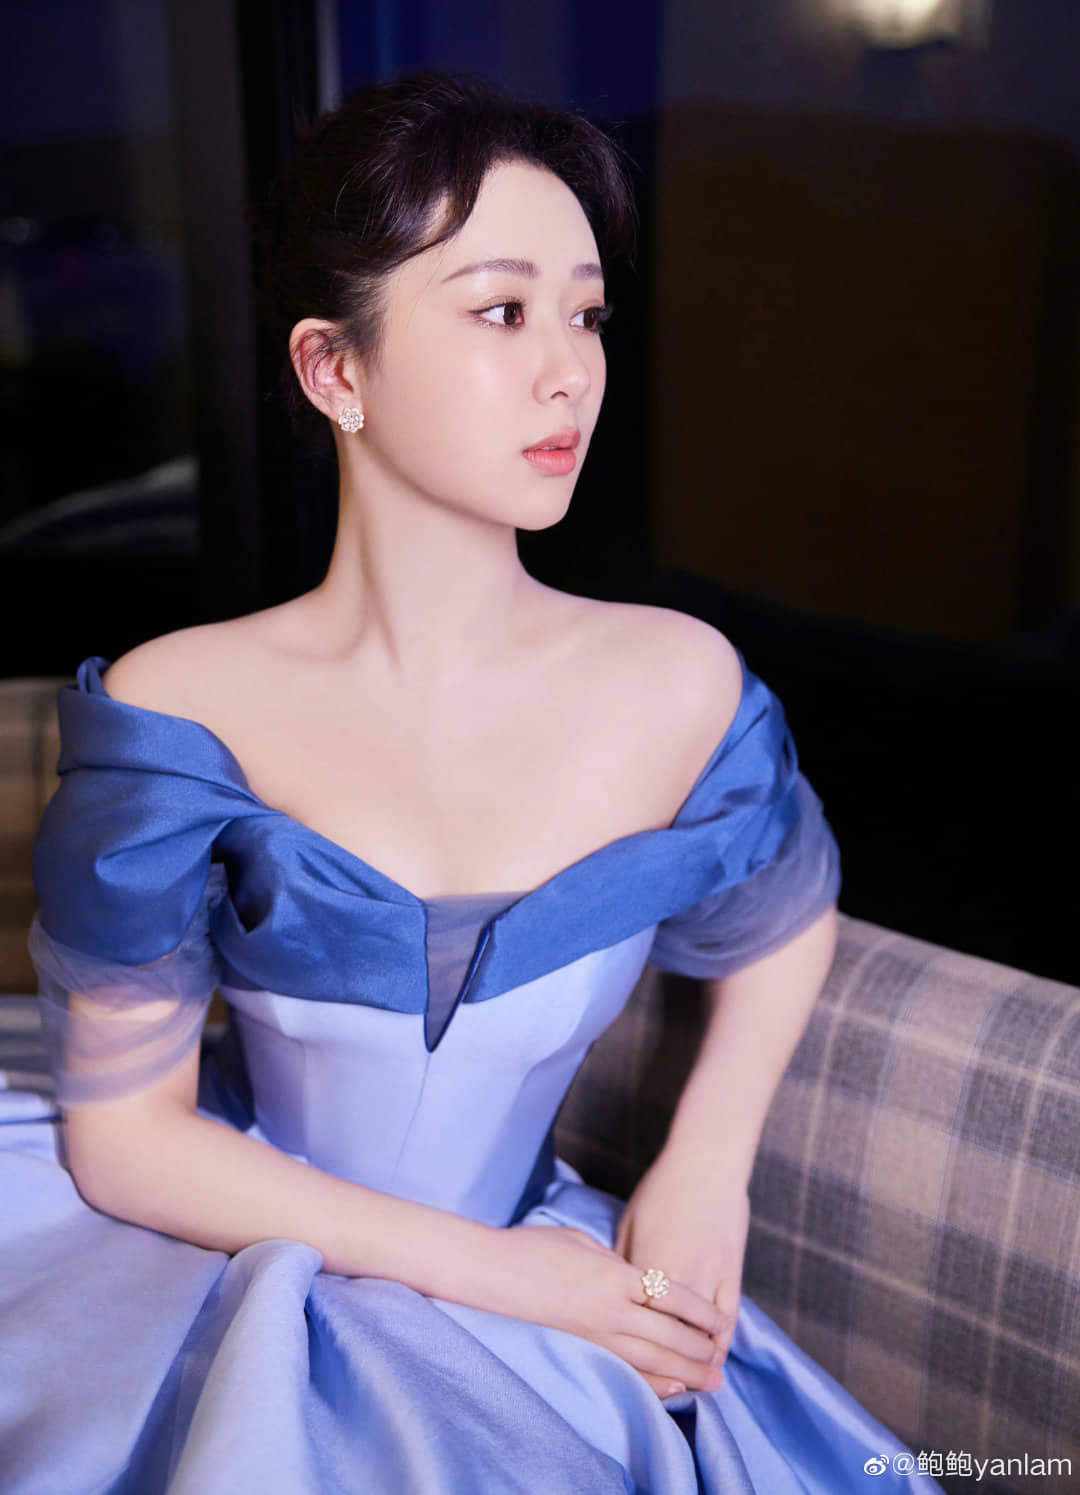 Dương Tử xuất hiện như 'công chúa Lọ Lem' trong một sự kiện, các netizen 'mê mẩn' vì mỹ nhân sở hữu điều này? - Ảnh 6